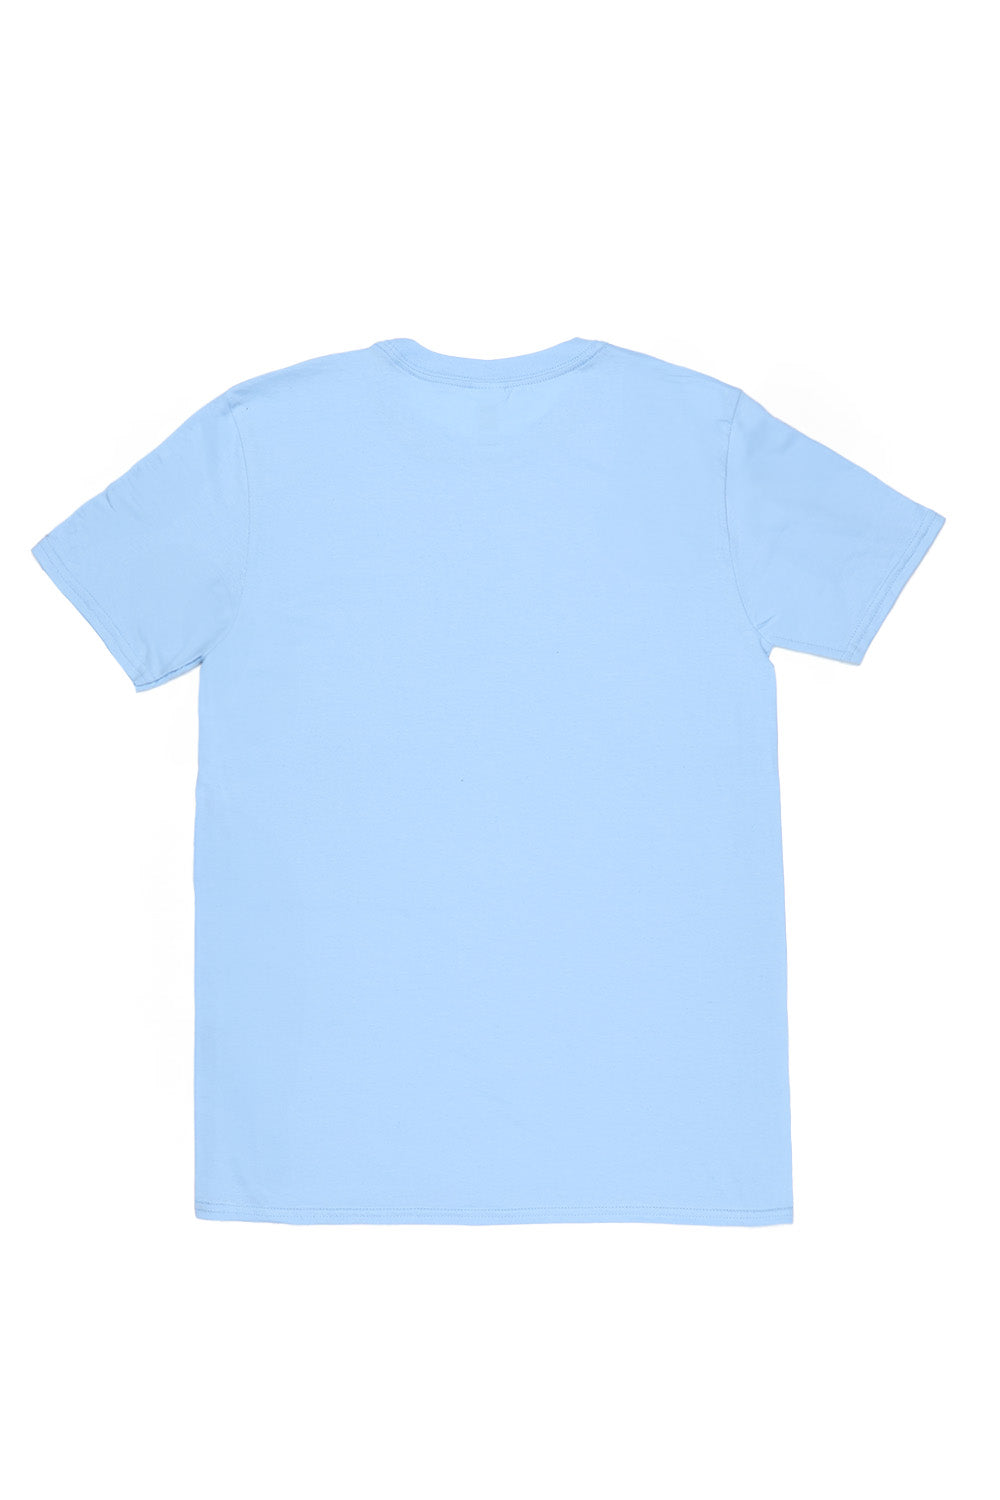 France T-Shirt in Light Blue (Custom Packs)